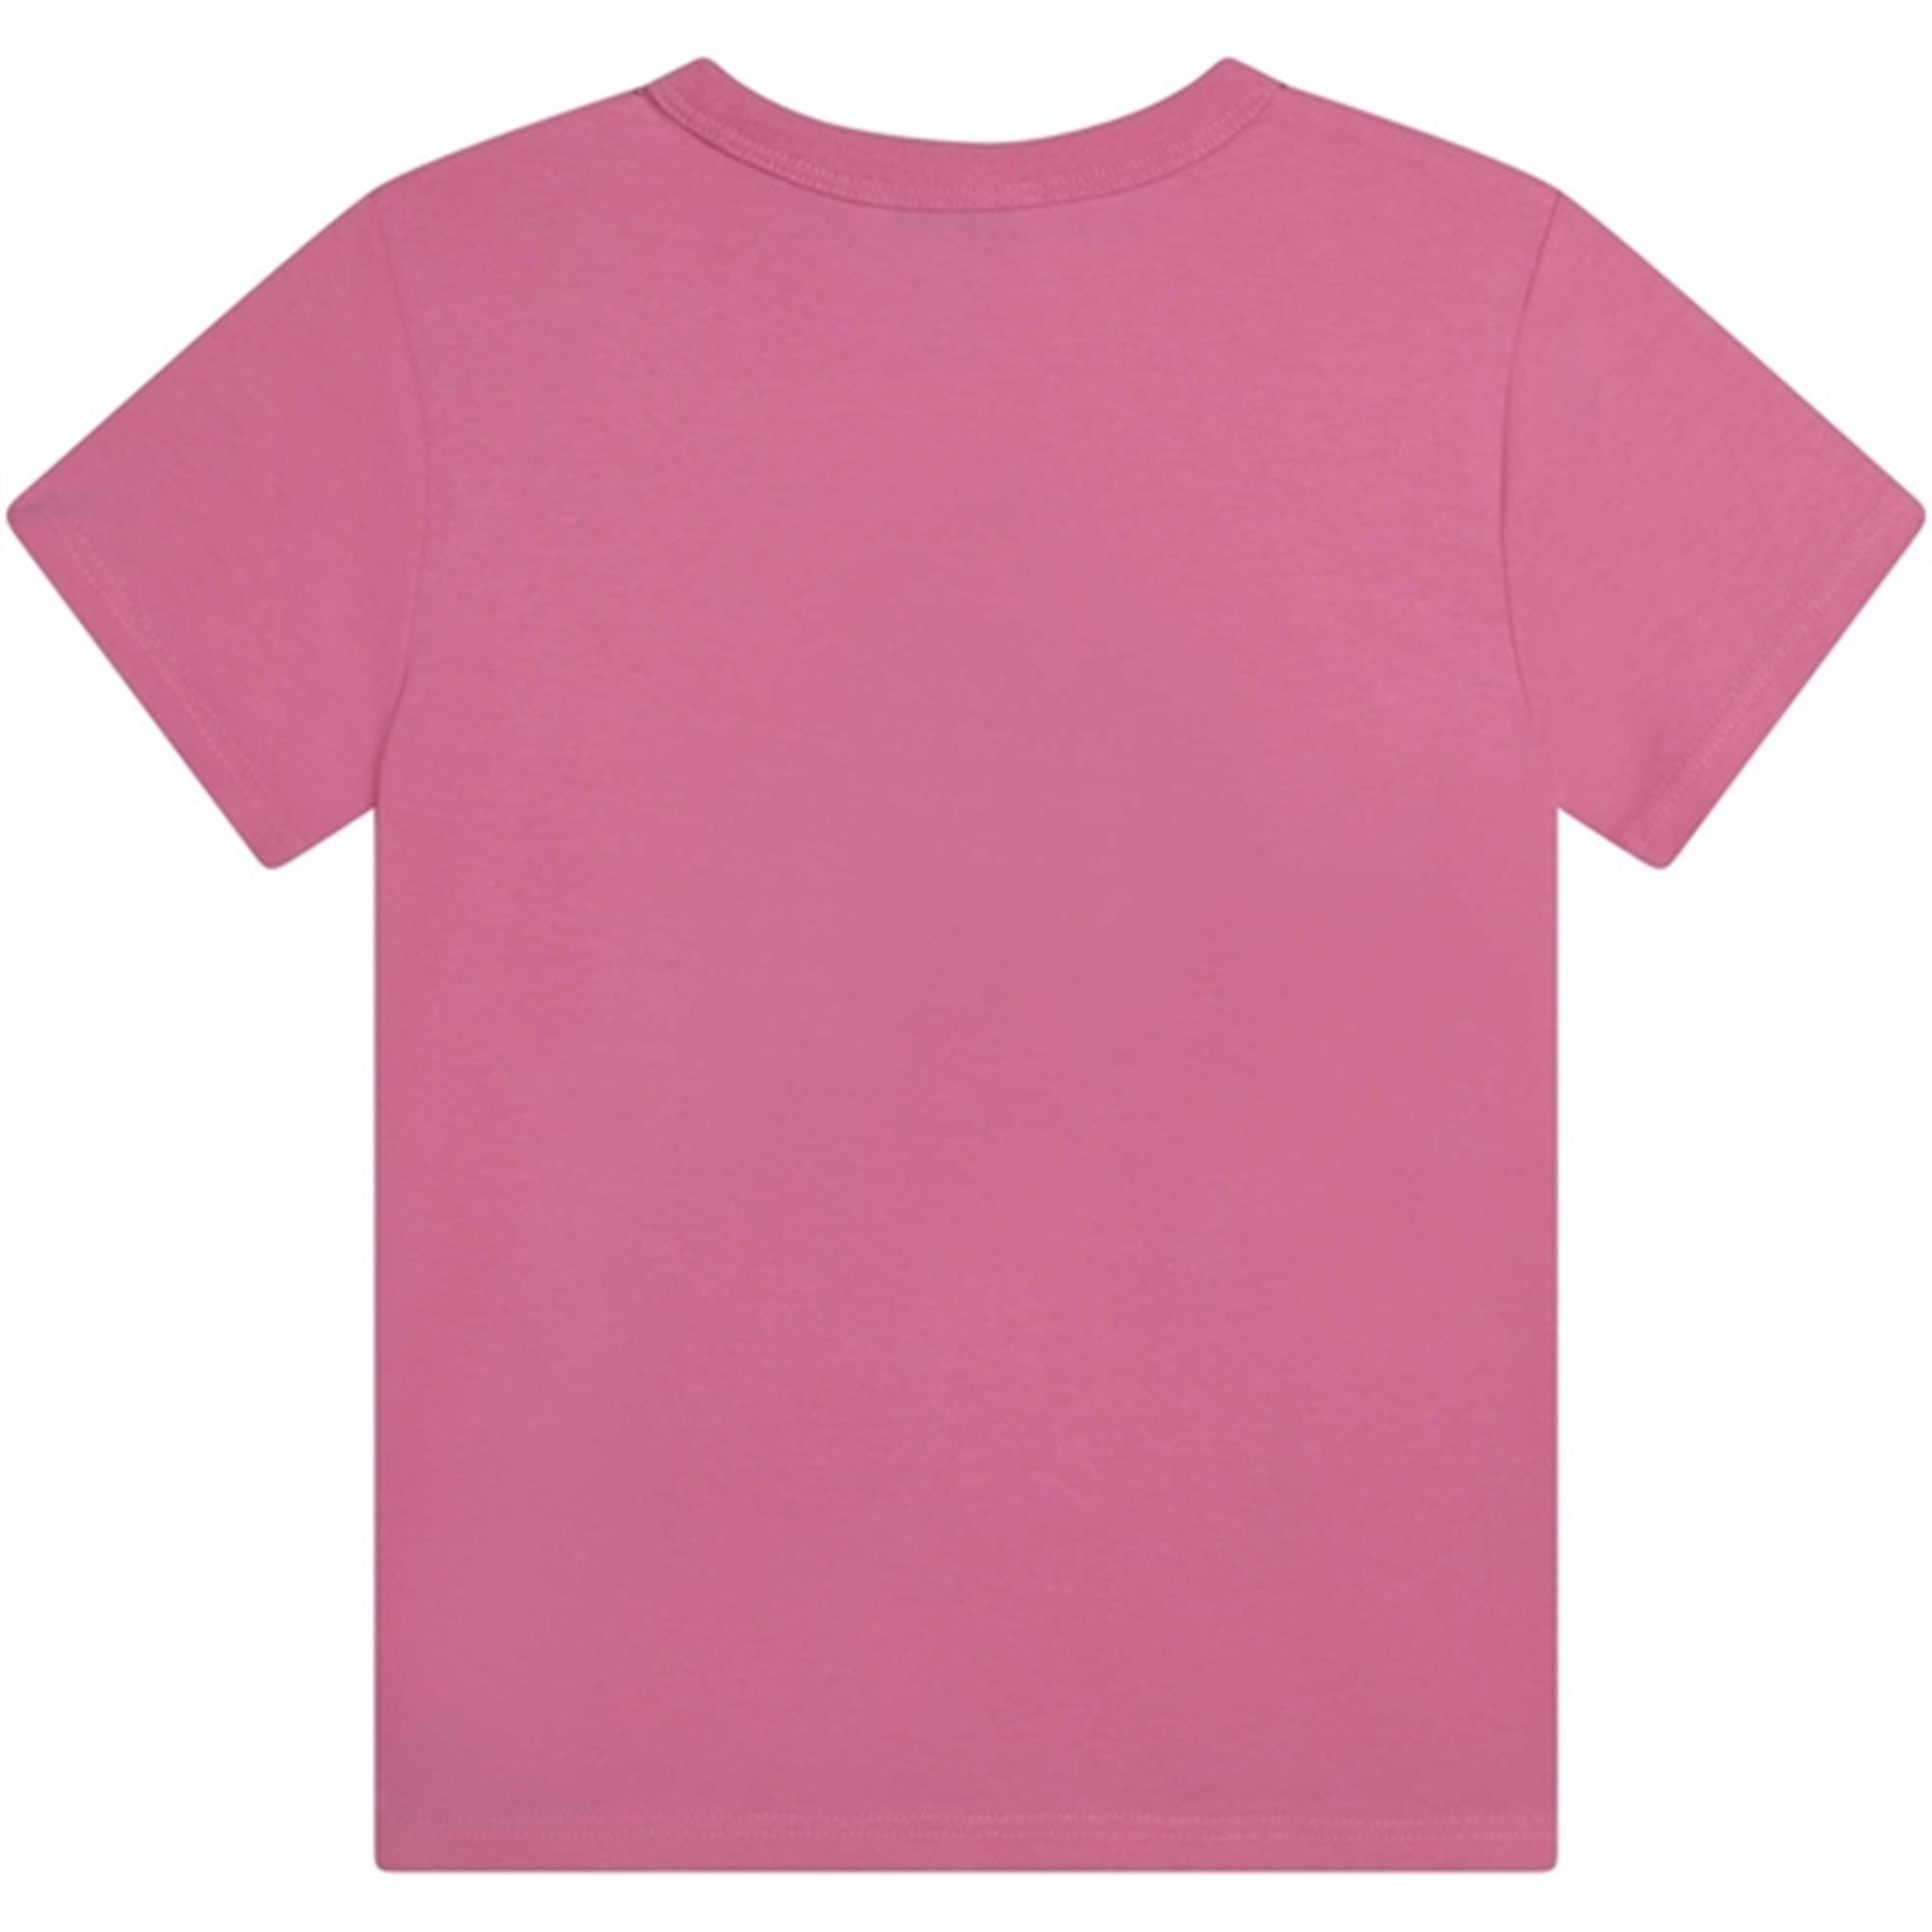 Little Marc Jacobs T-shirt Apricot 2